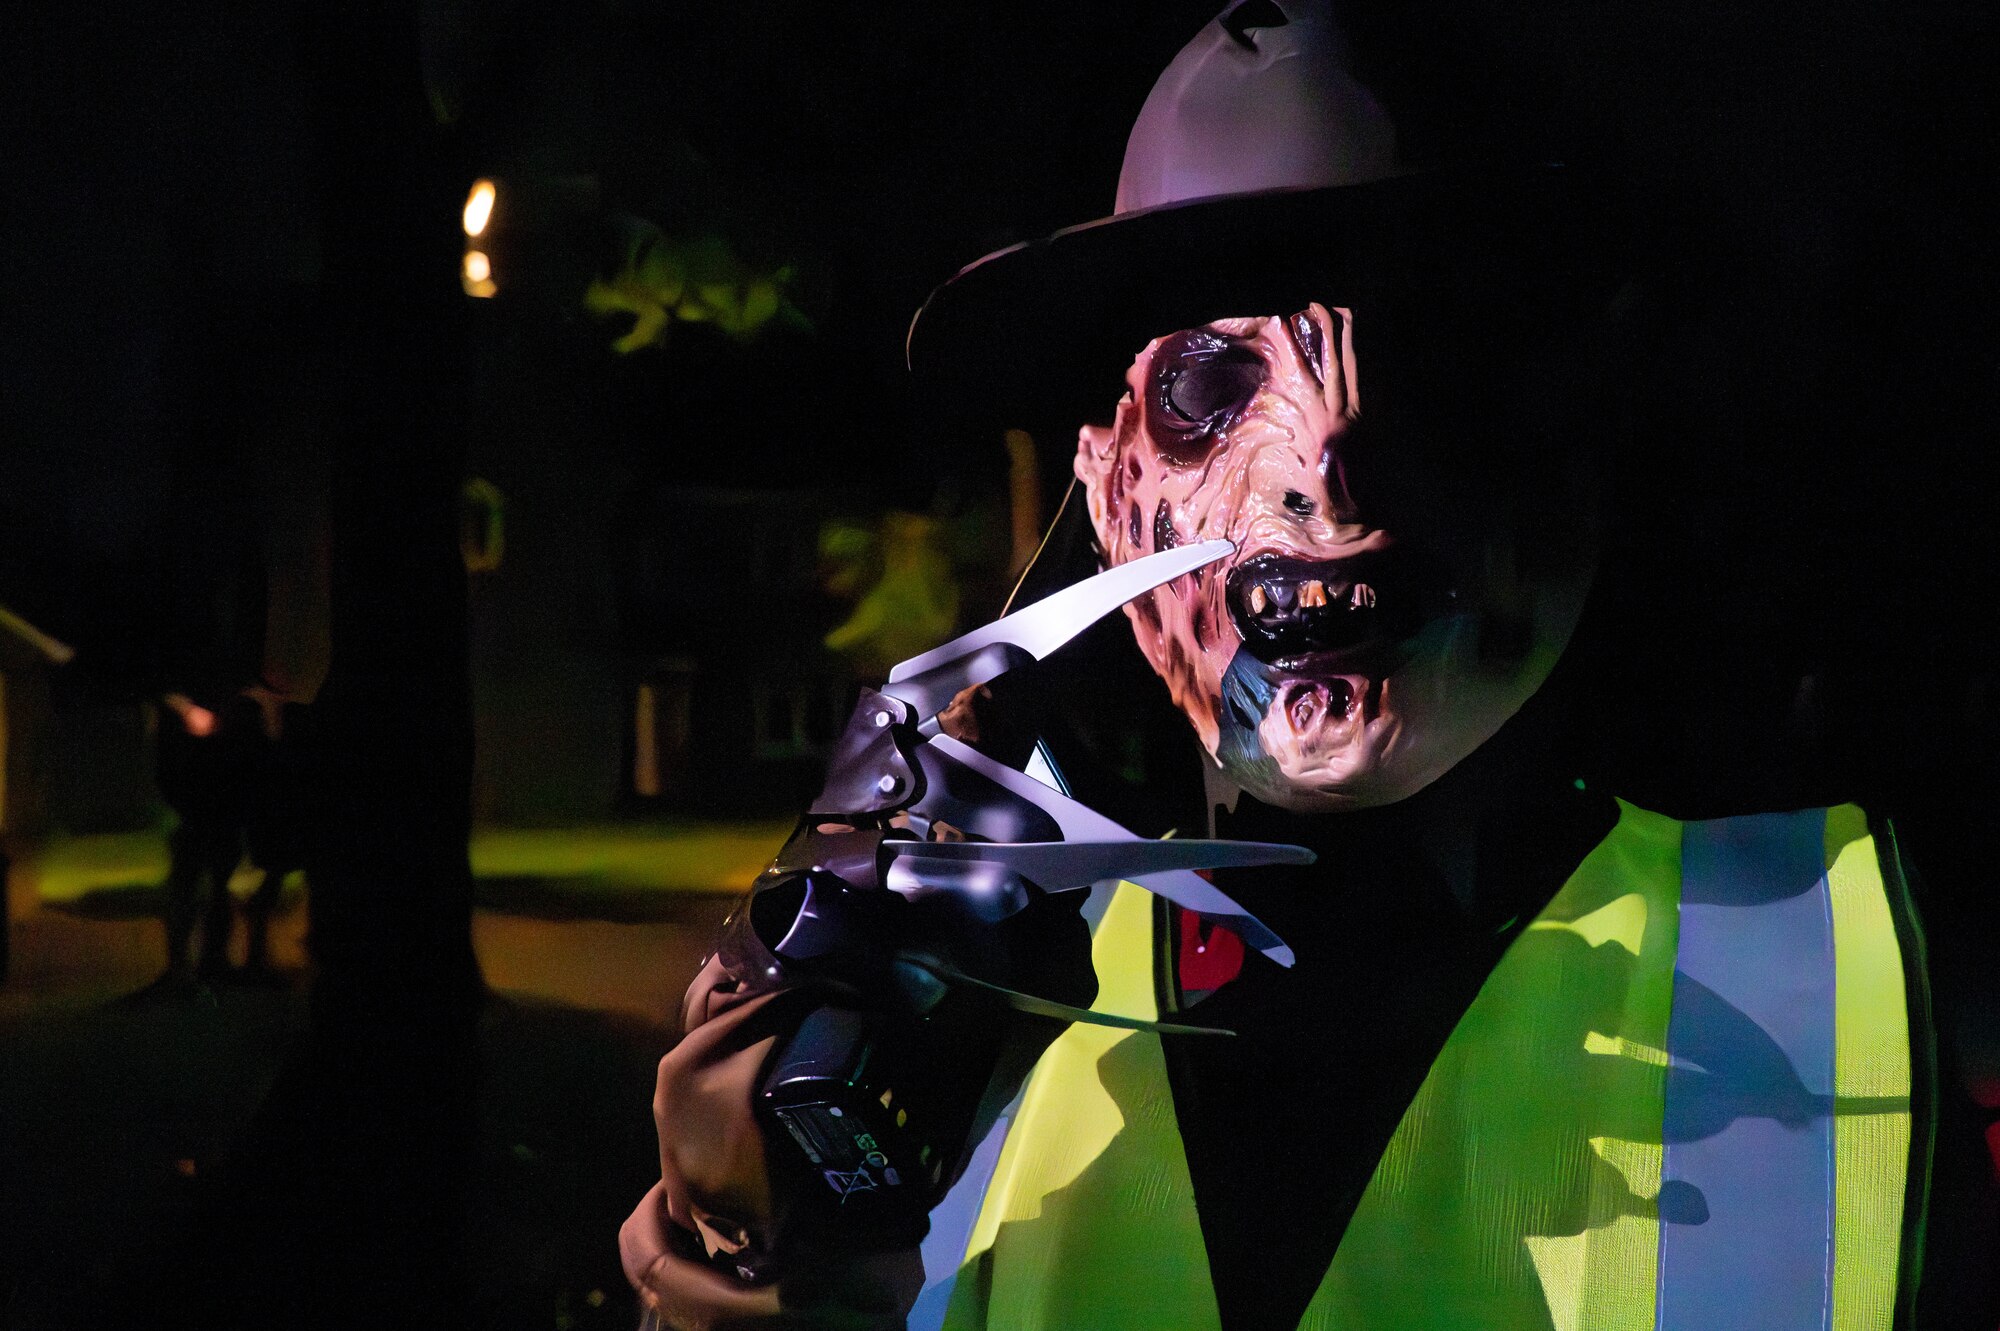 A volunteer dressed as Freddy Krueger speaks over a walkie talkie